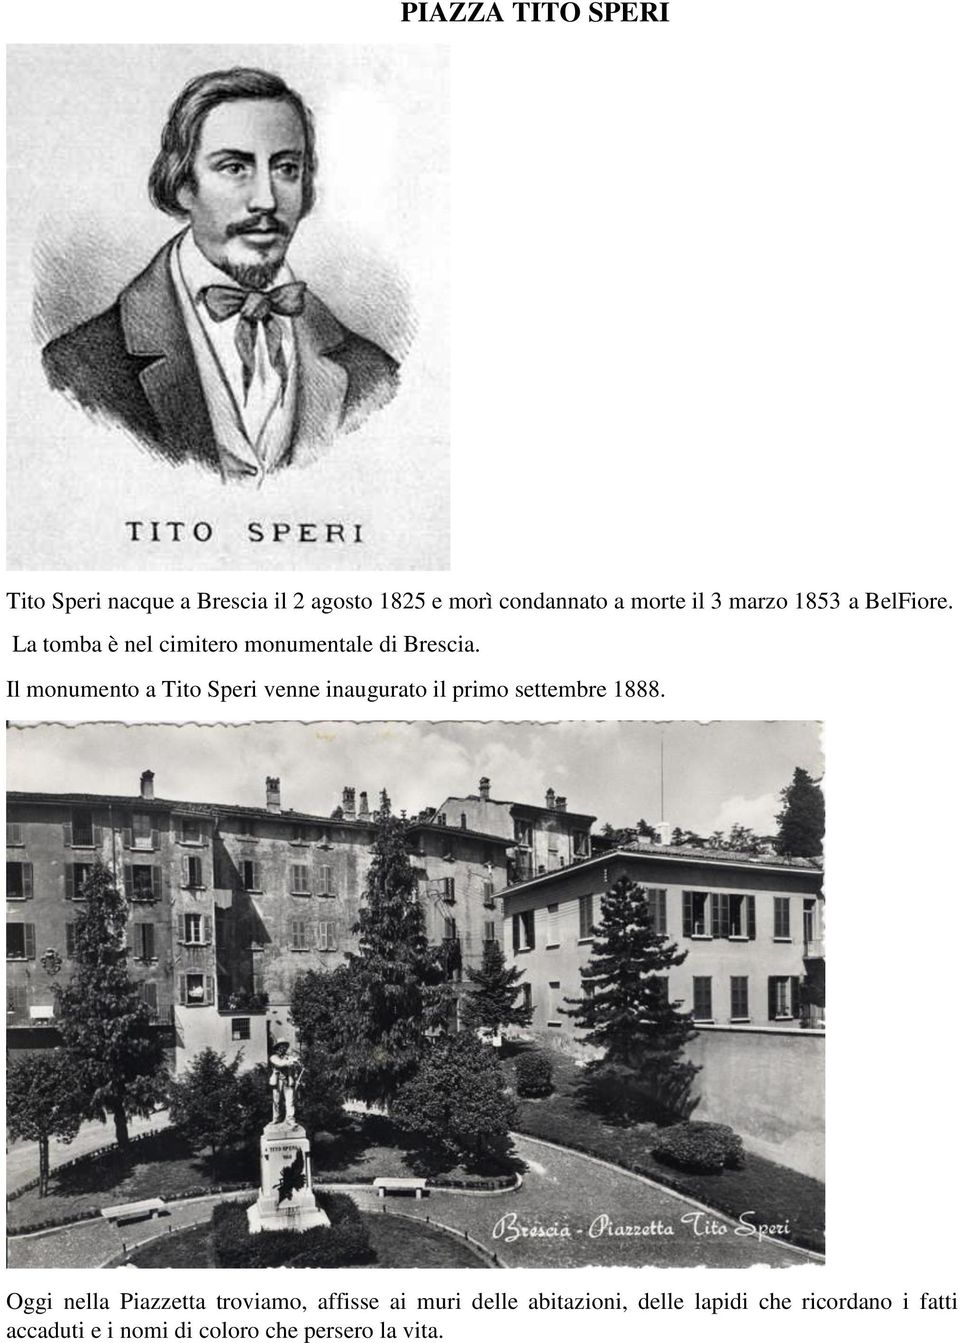 Il monumento a Tito Speri venne inaugurato il primo settembre 1888.